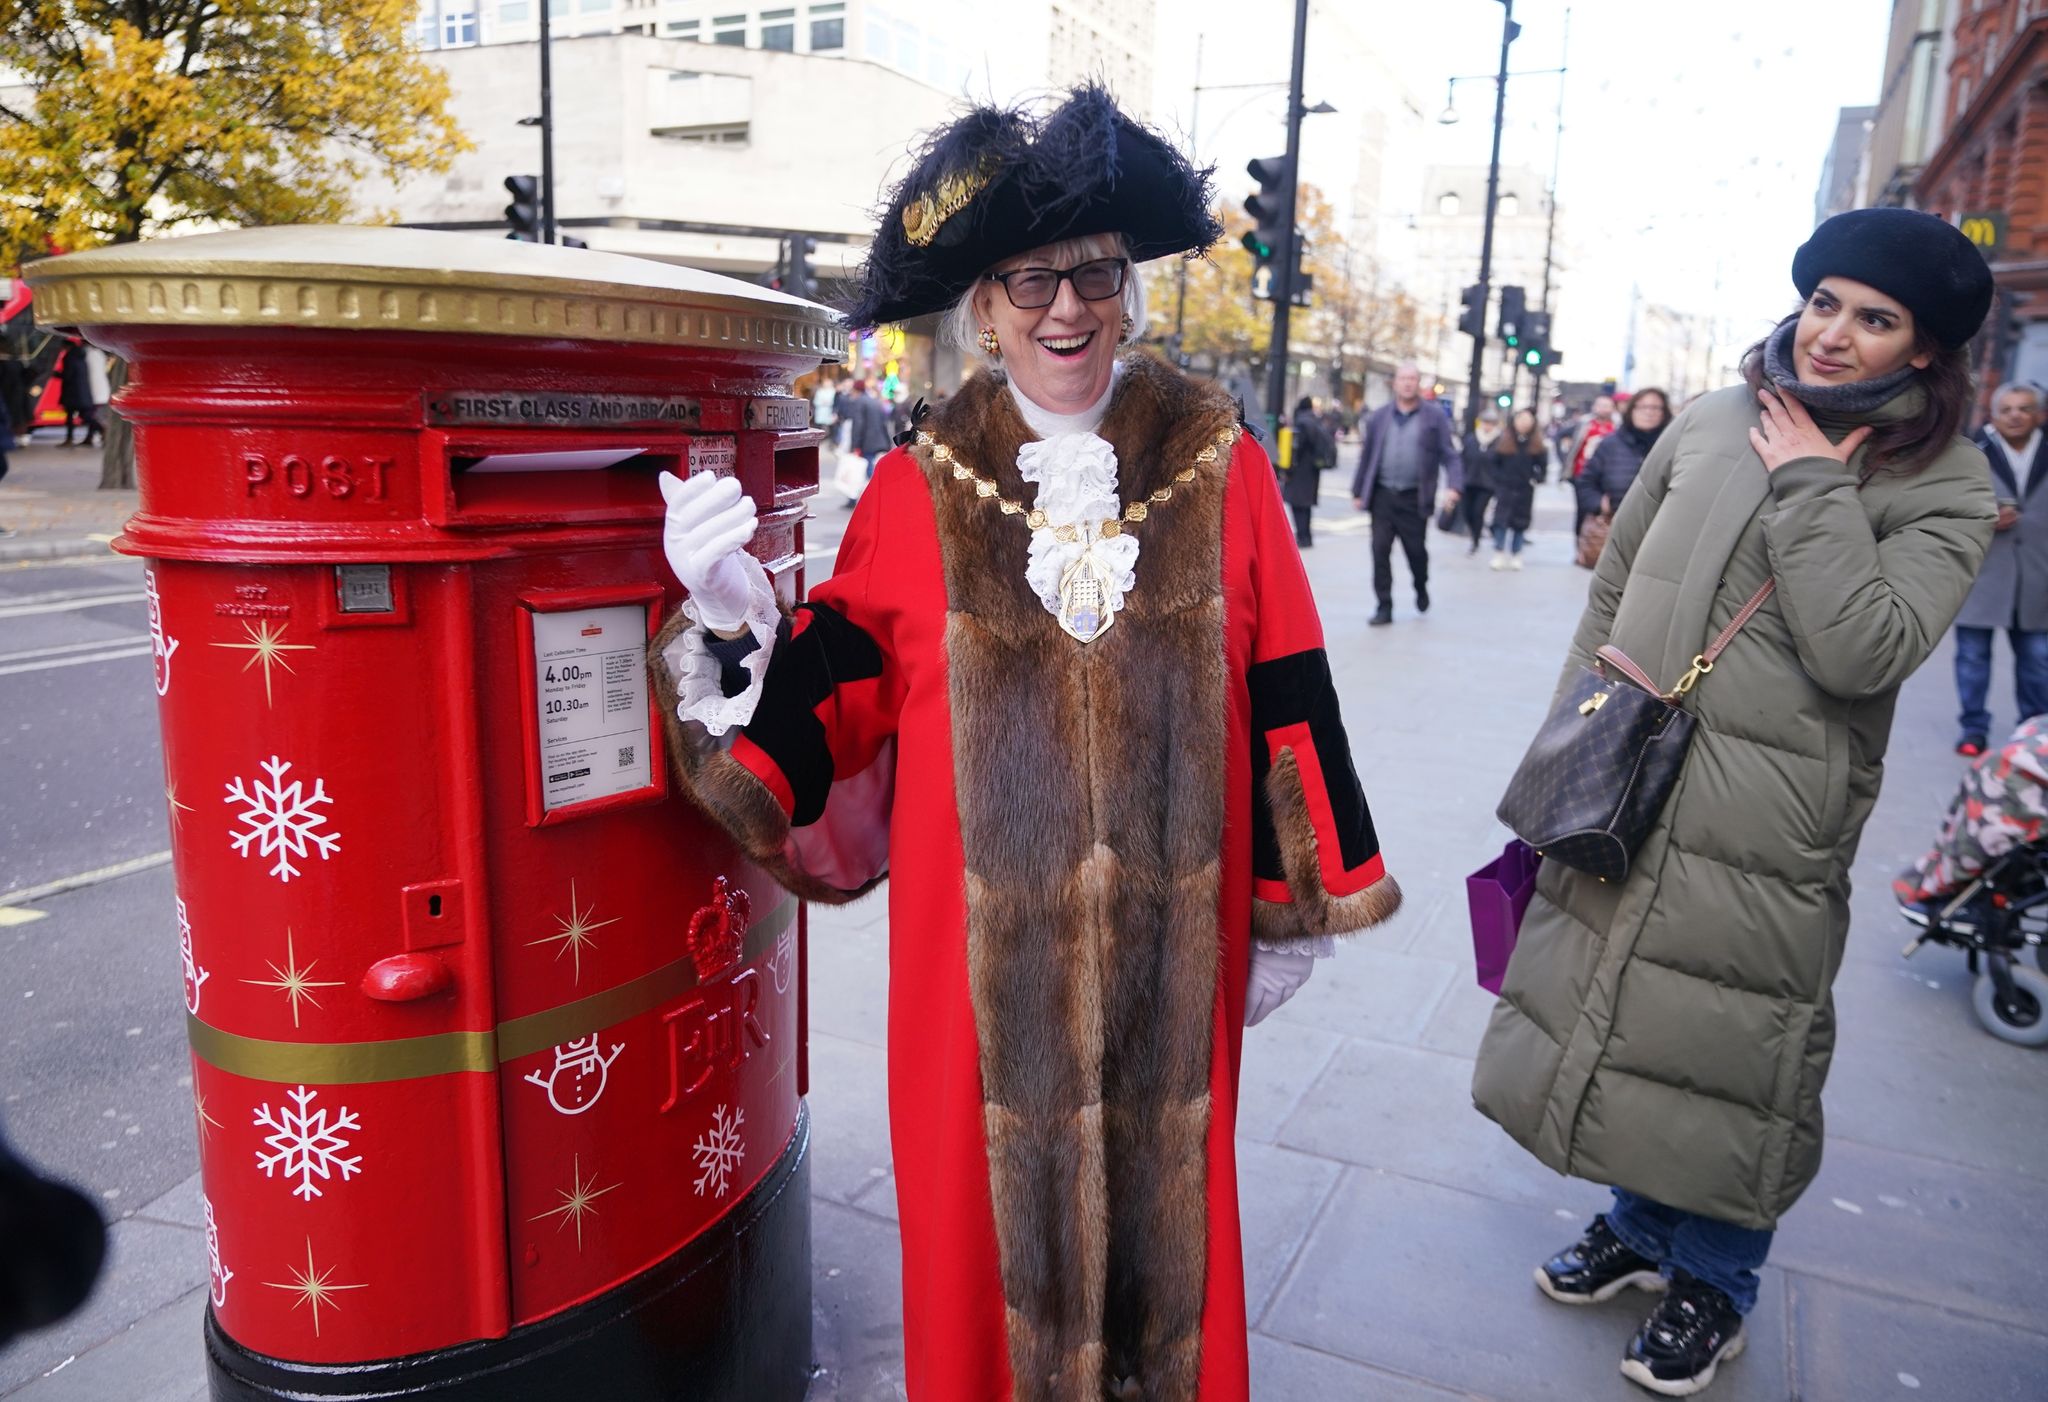 «Es gibt nichts Besseres, als Weihnachtskarten an Freunde und Familie zu schicken und ein bisschen festliche Freude zu versprühen», sagt die Londoner Bezirksrätin Patricia McAllister.